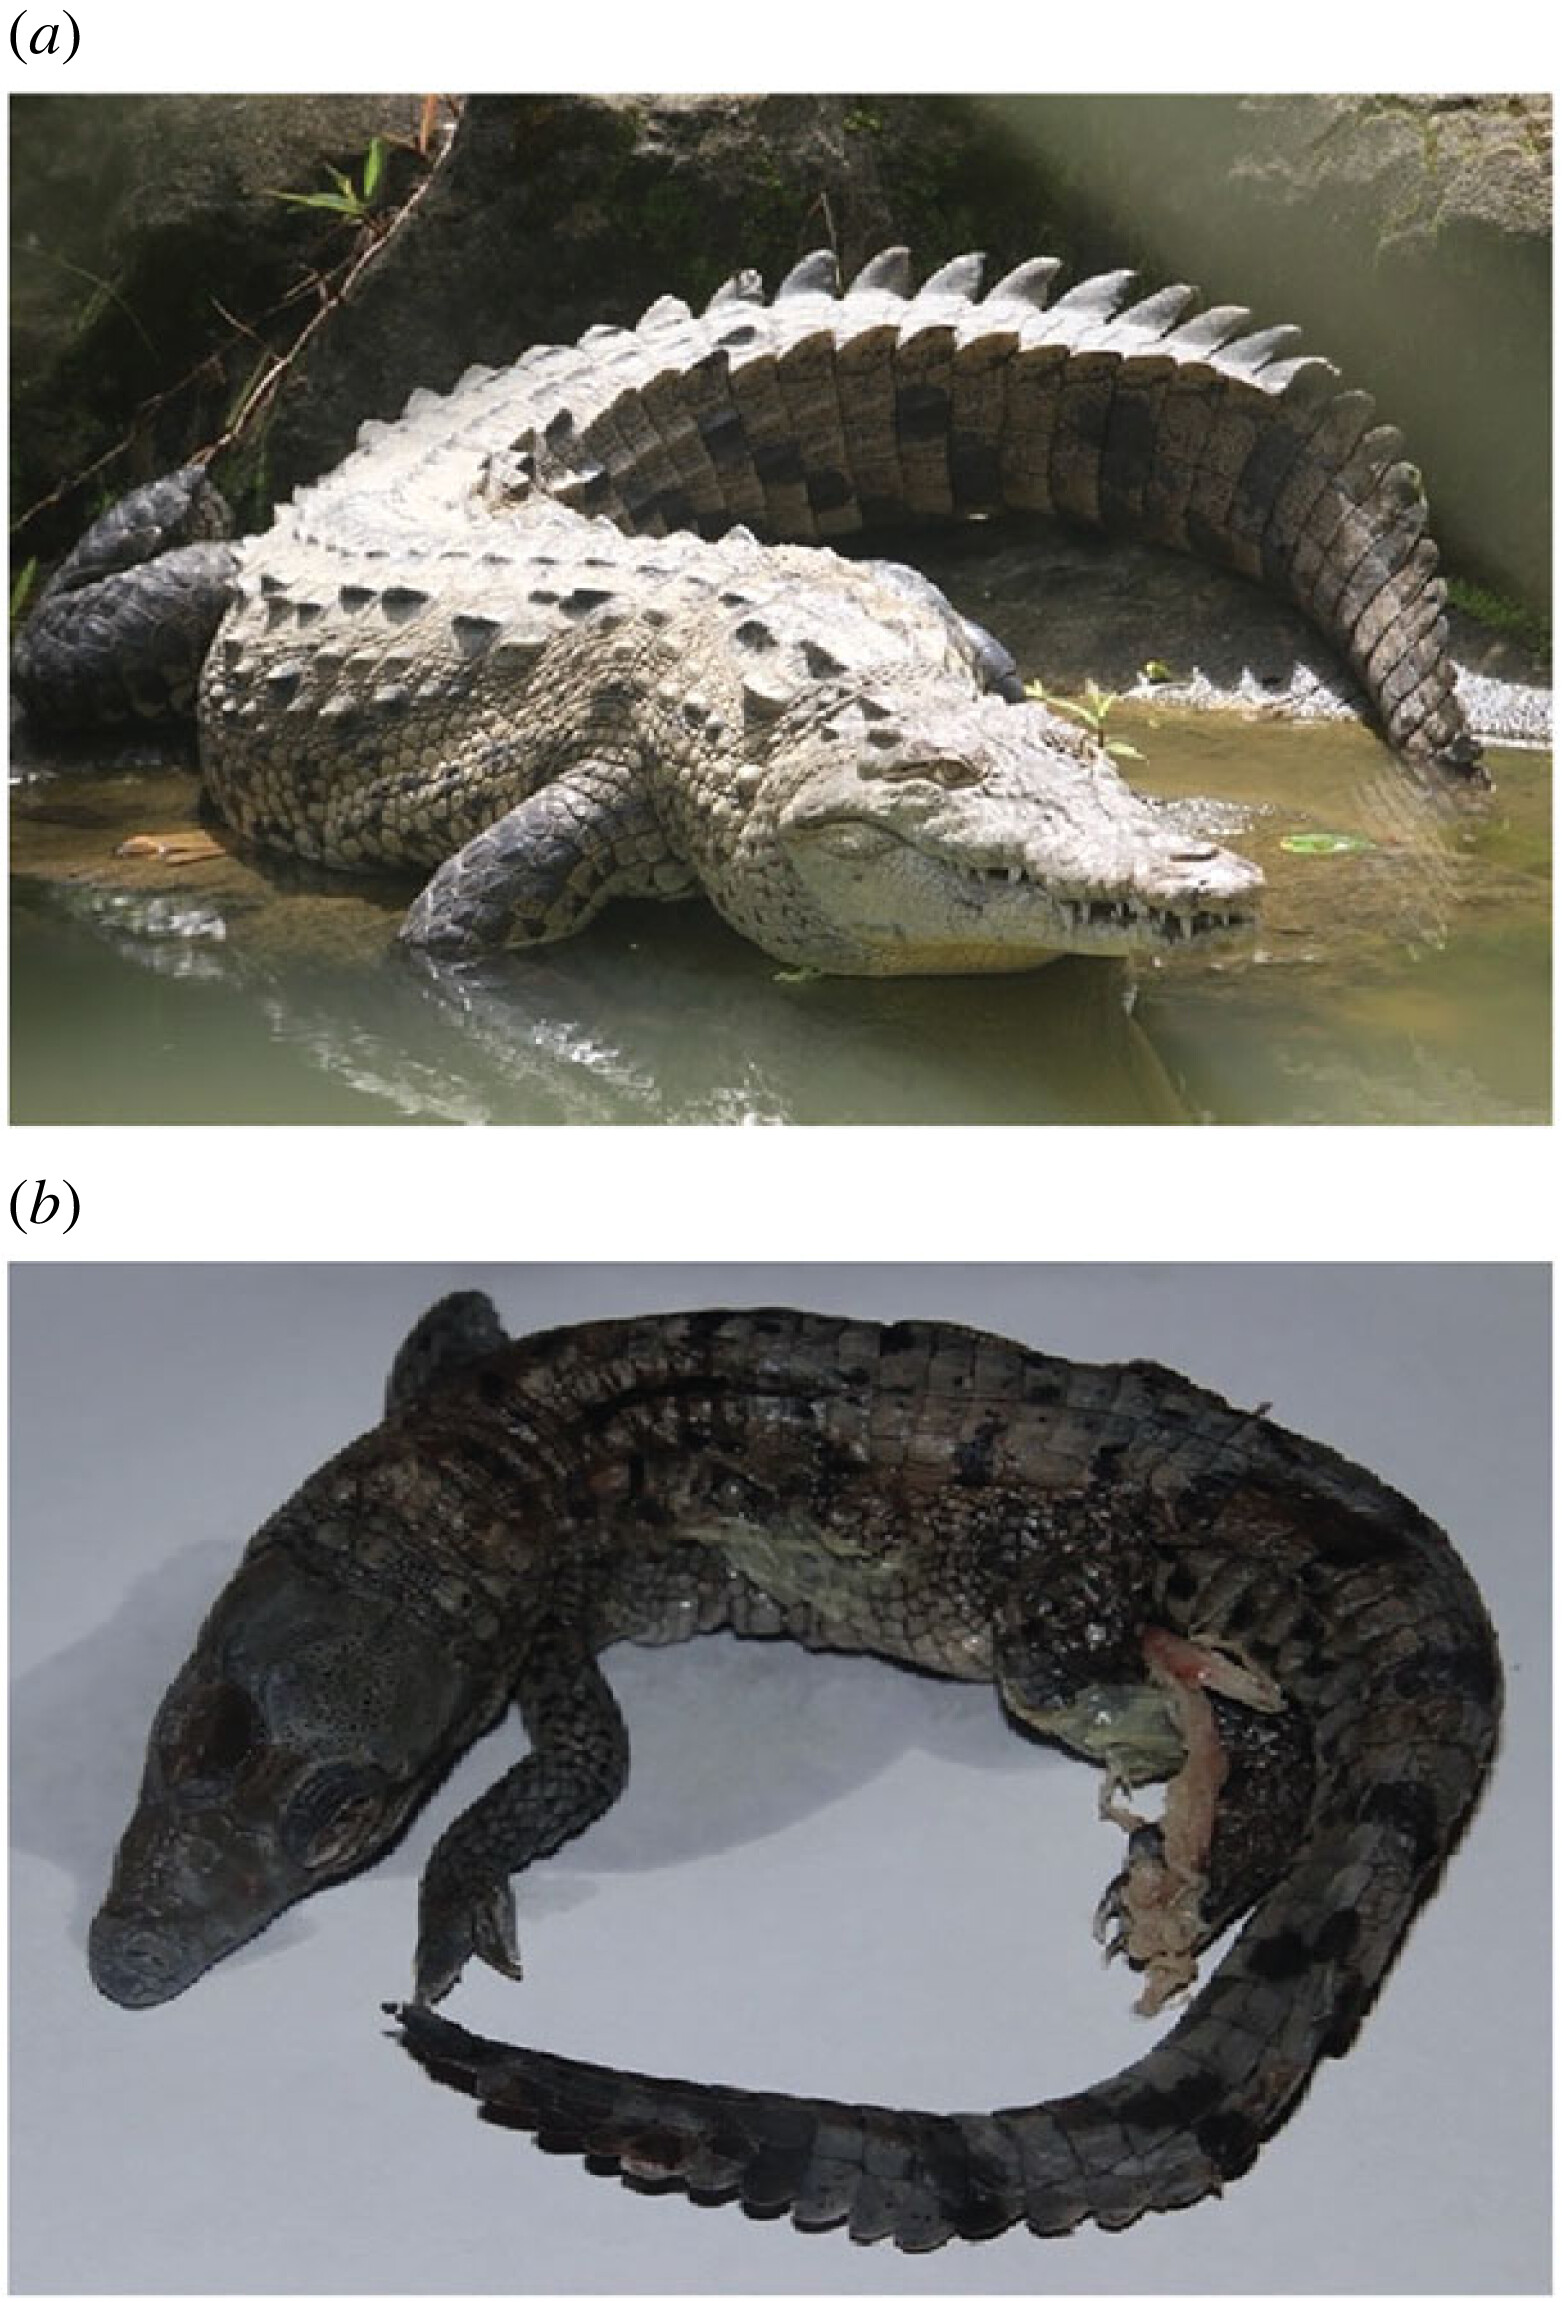 Figure 1. (a) Adult American crocodile, Crocodylus acutus. Photo courtesy of Q. Dwyer. (b) Stillborn fetus of American crocodile, Crocodylus acutus, Parthenogen. Photo courtesy of Q. Dwyer.